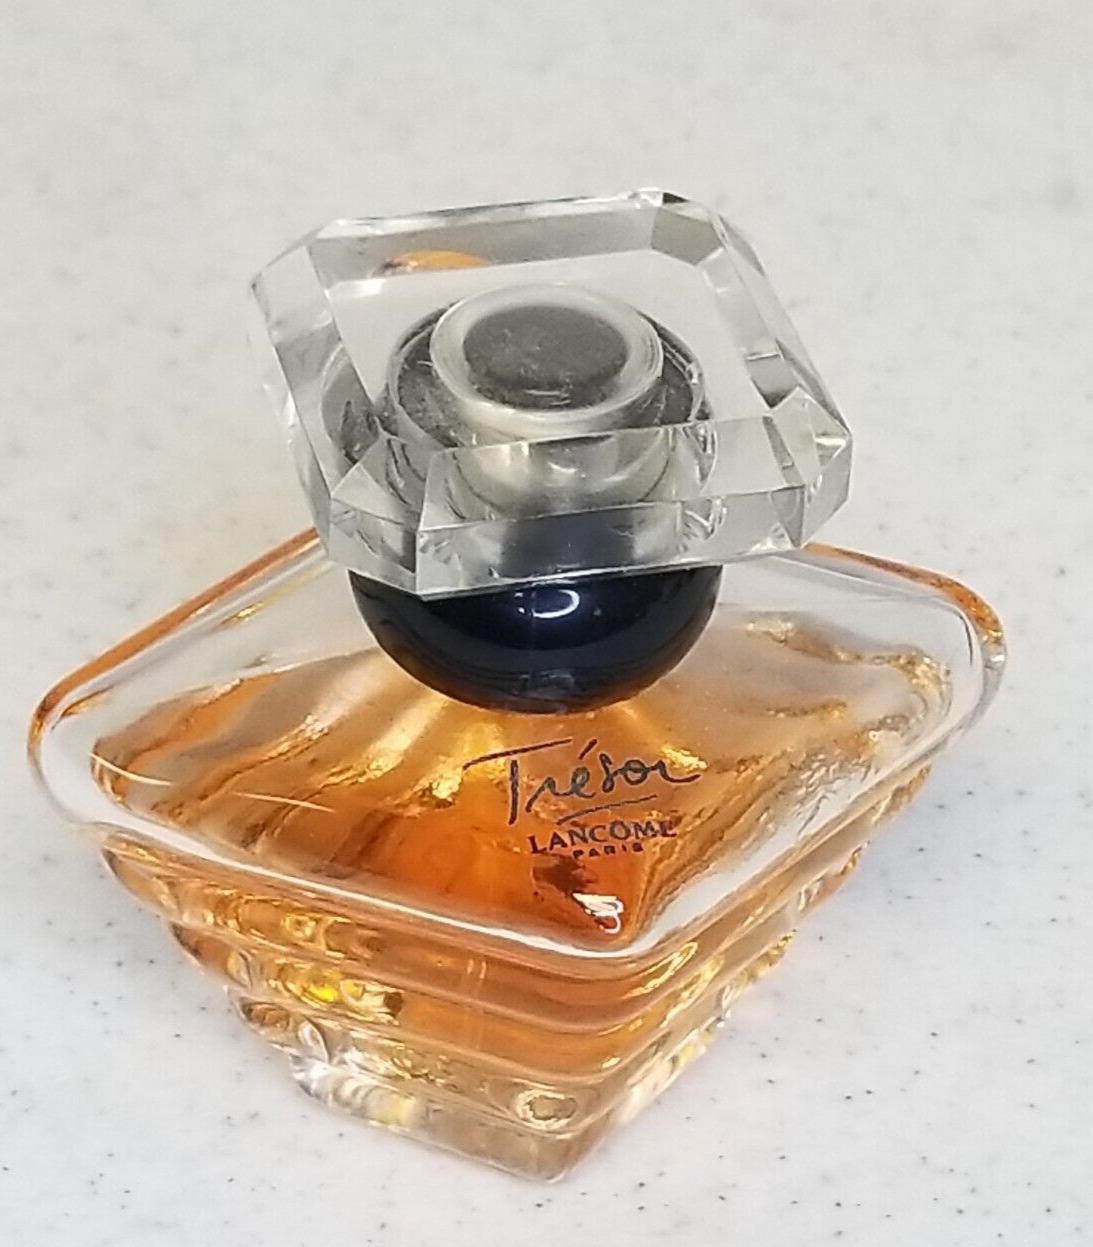 Tresor by Lancome 1 fl.oz. eu de Parfum partial bottle